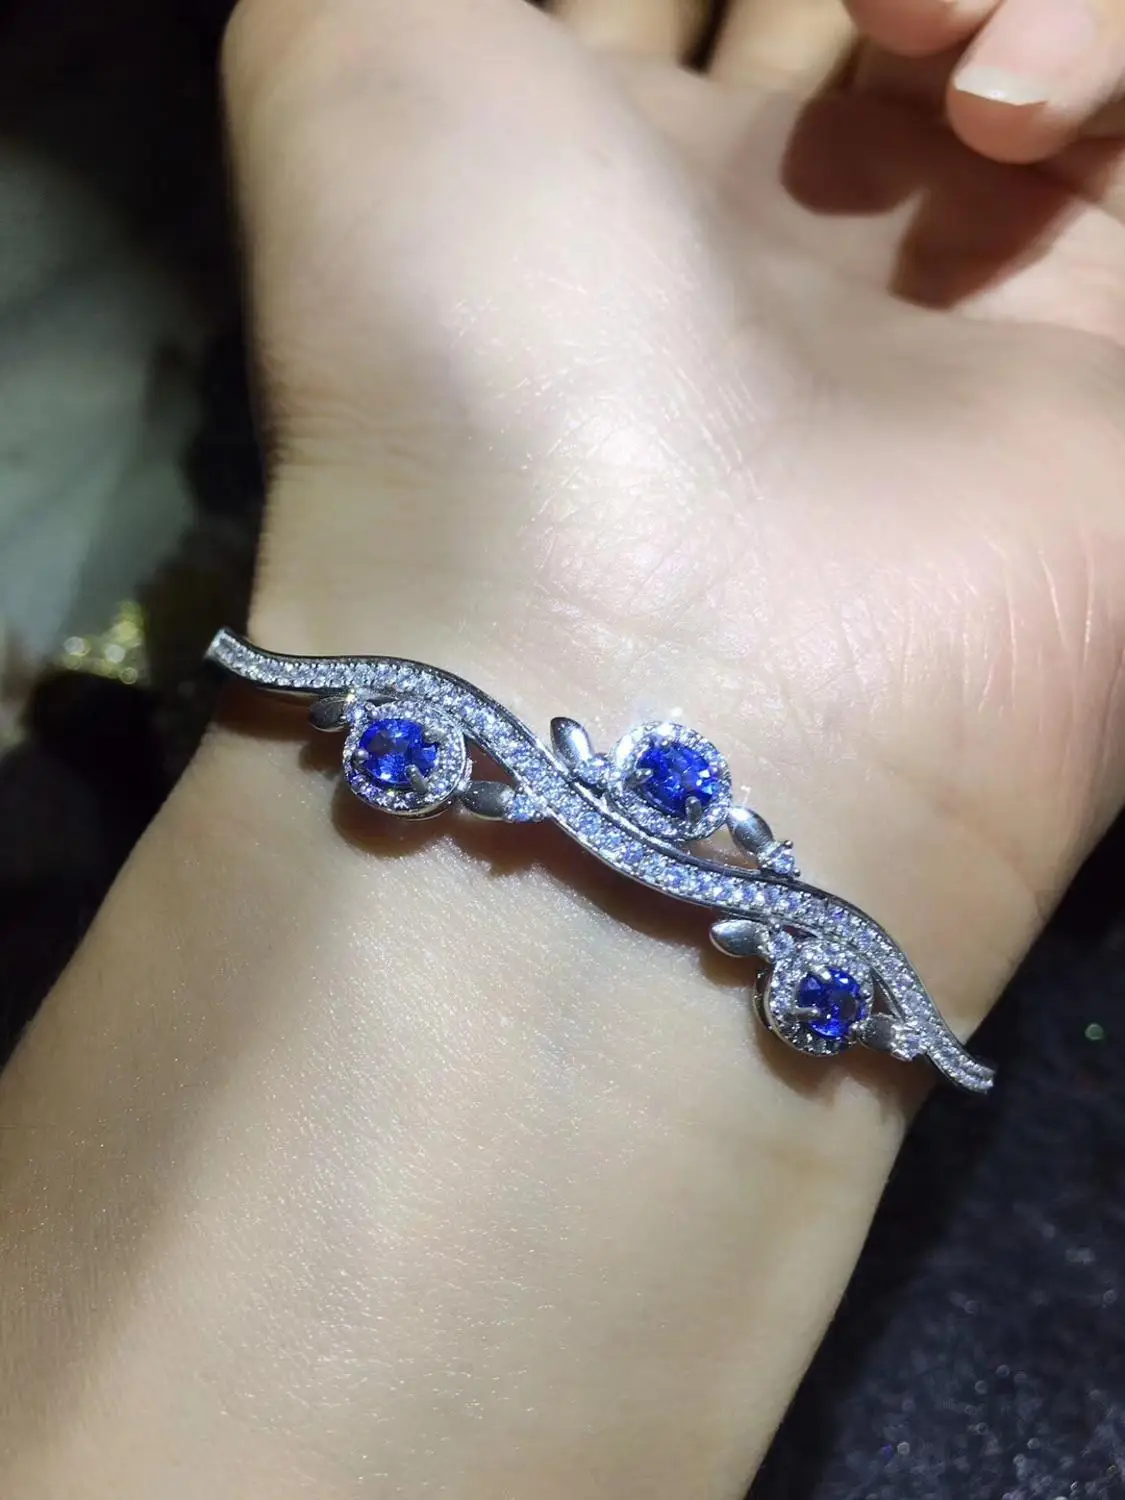 

Женский браслет с голубым сапфиром, ювелирное изделие из настоящего серебра 925 пробы, специальный подарок